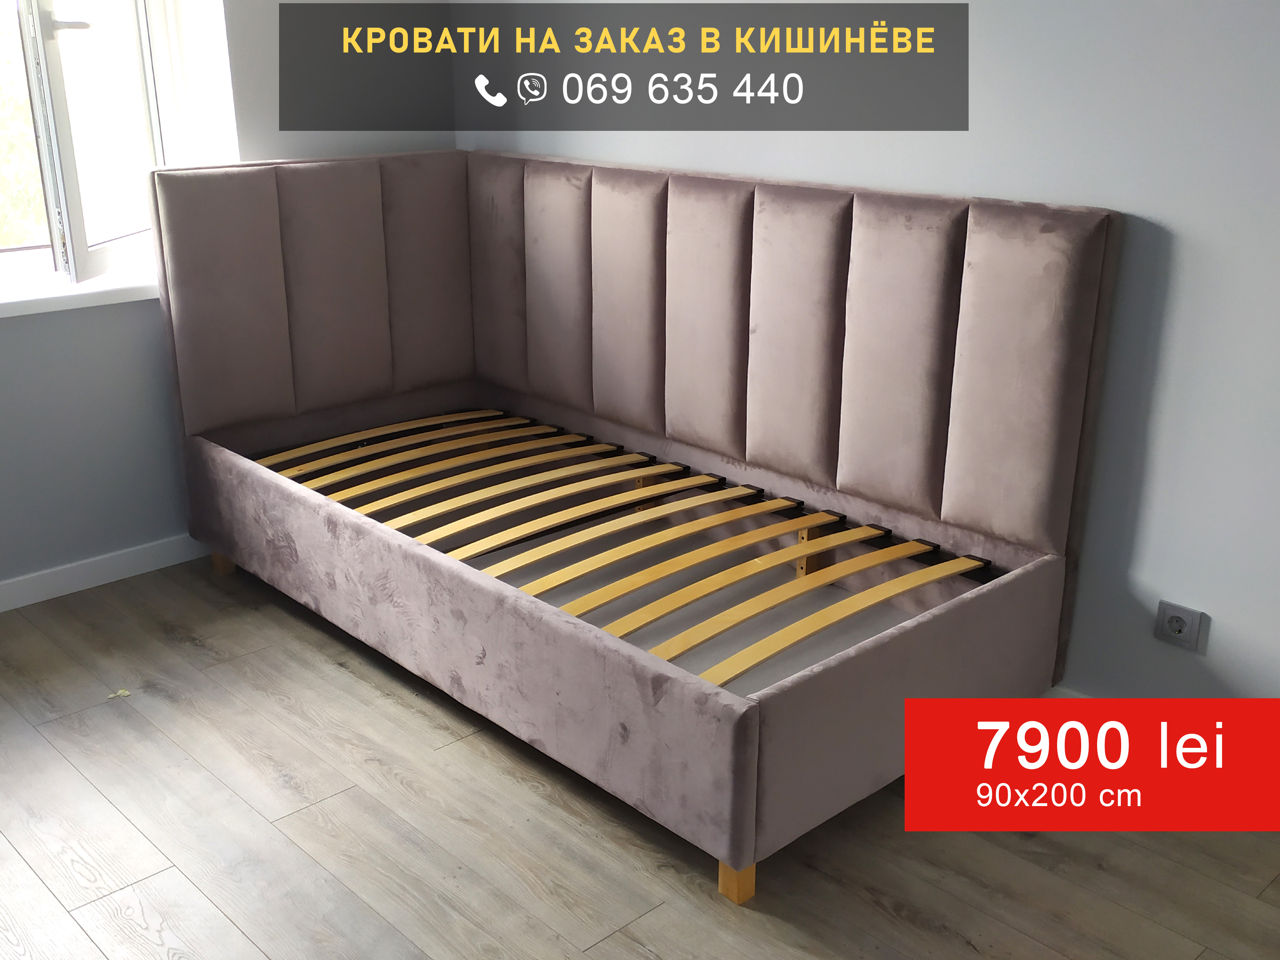 Кровать двуспальная 160х200см с подъемным механизмом = 7900 лей foto 6